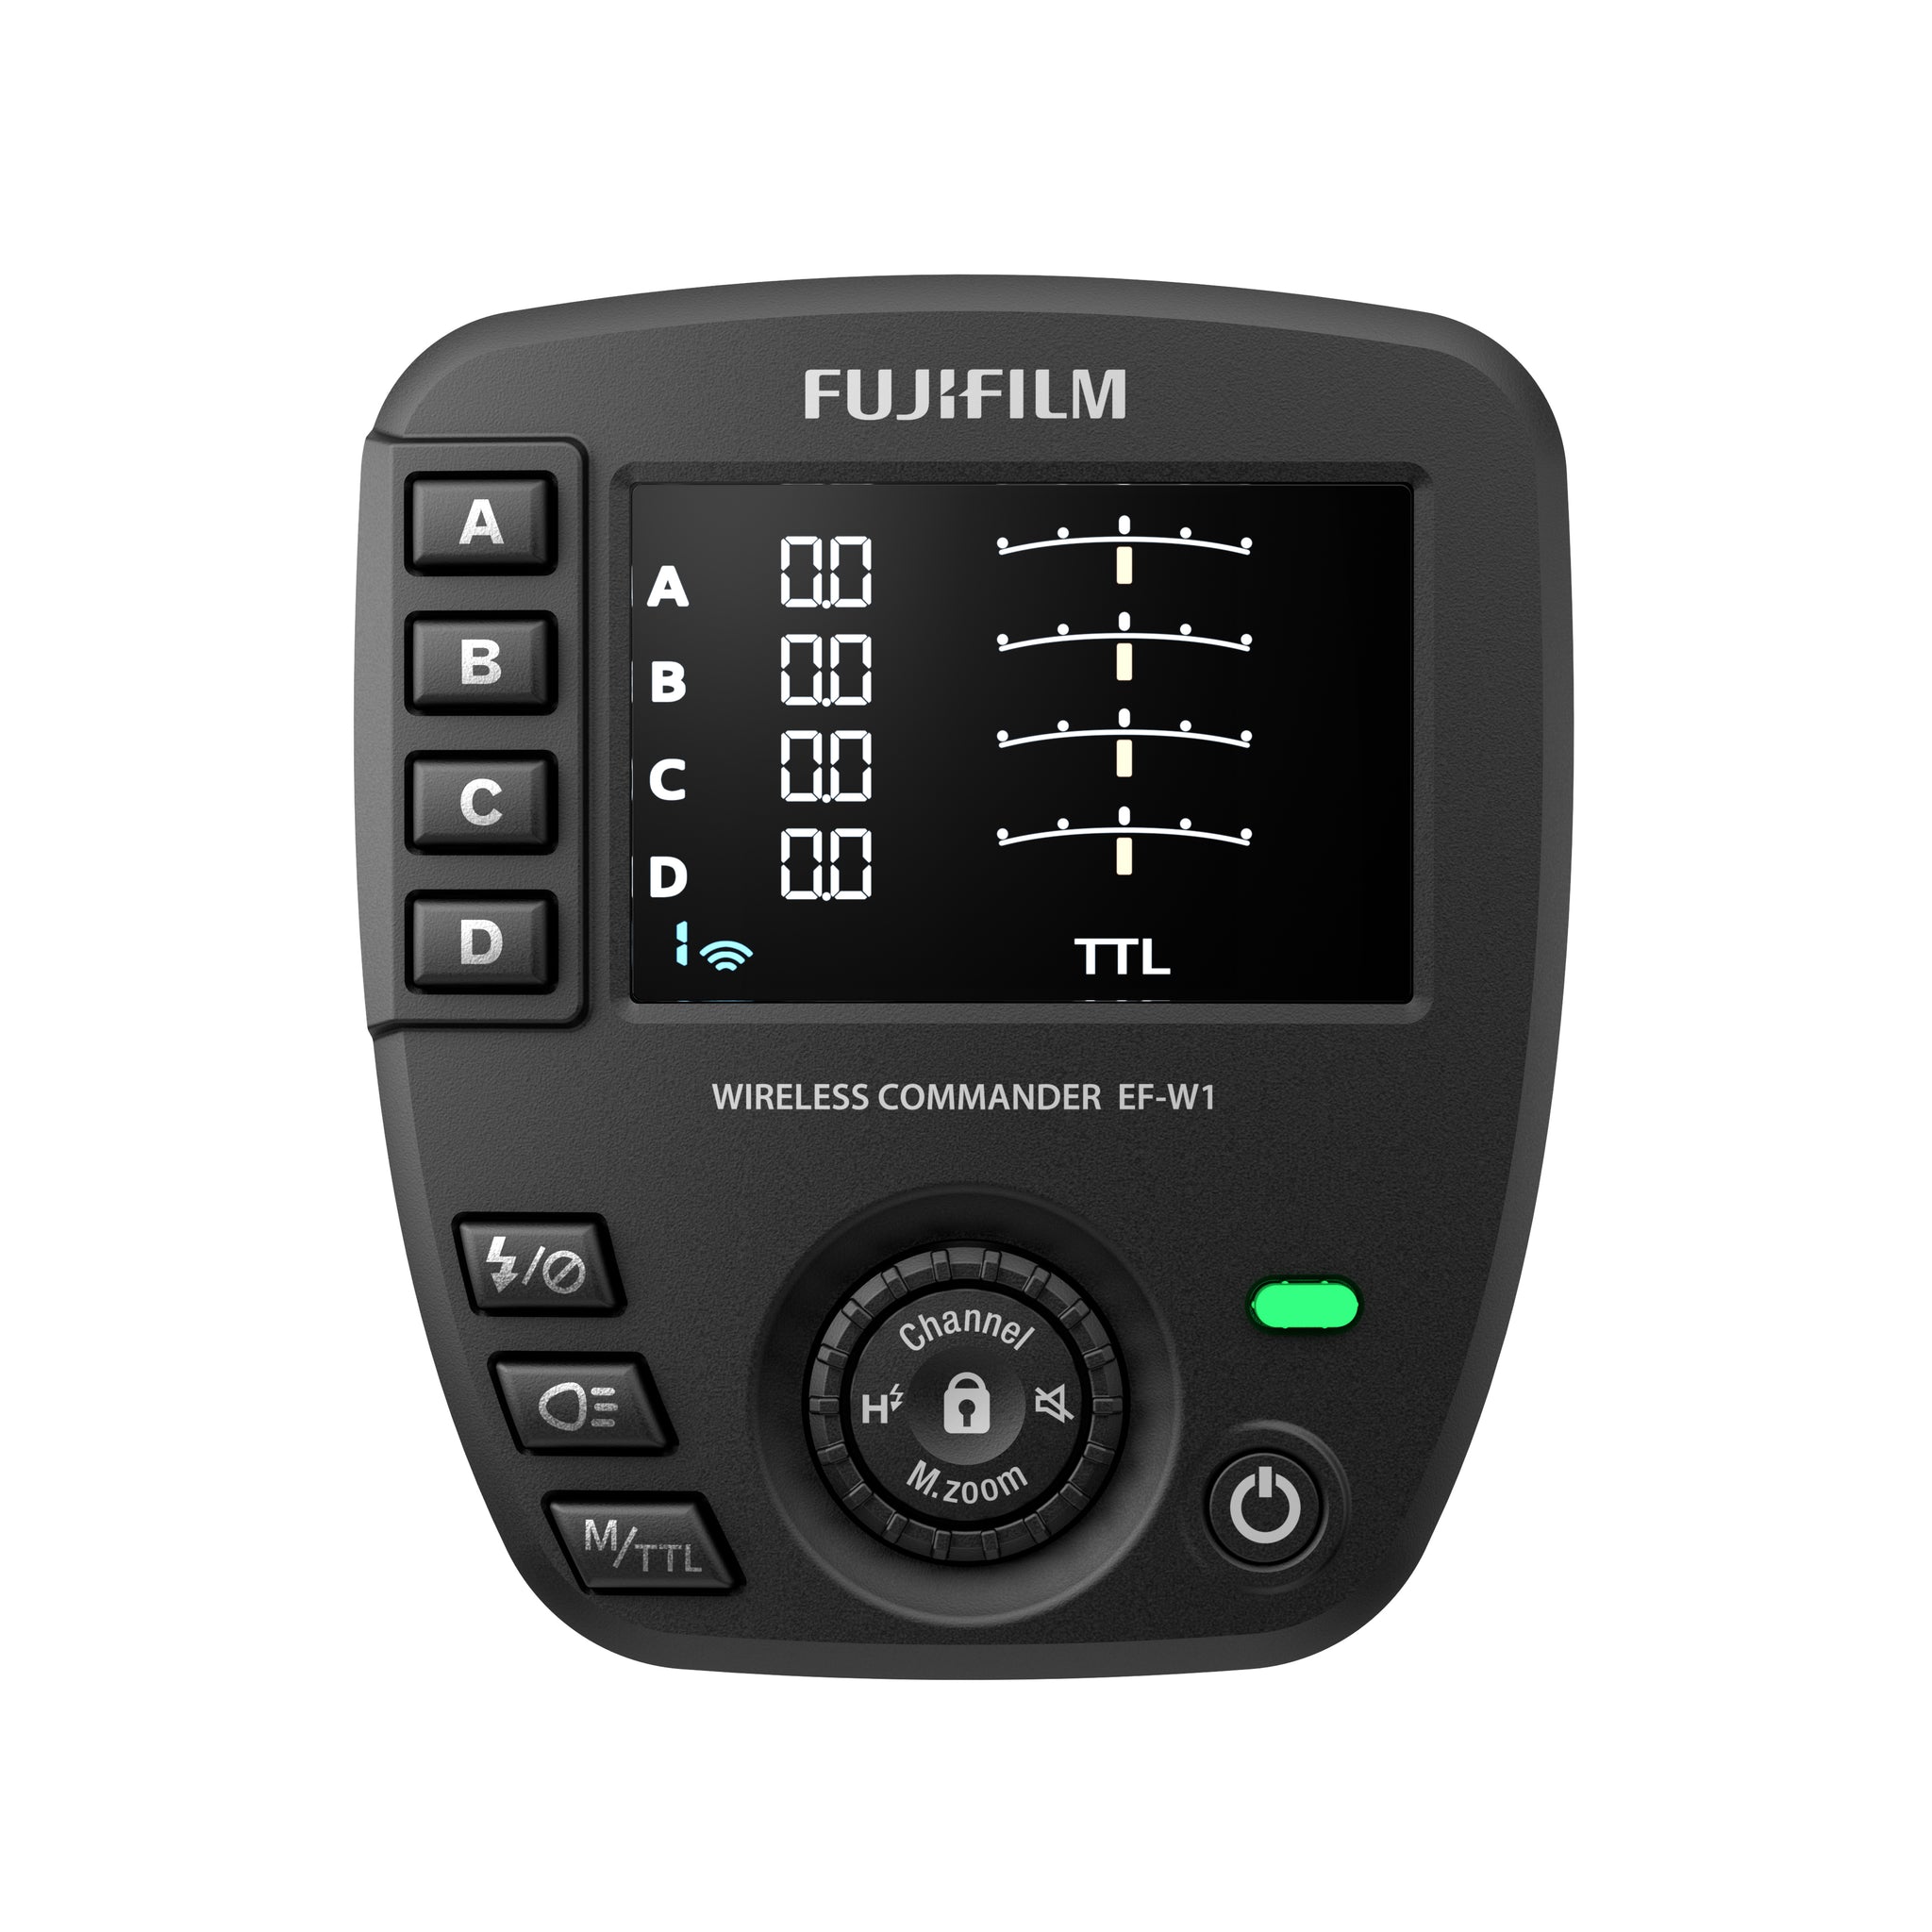 Fujifilm wireless commander EF-W1